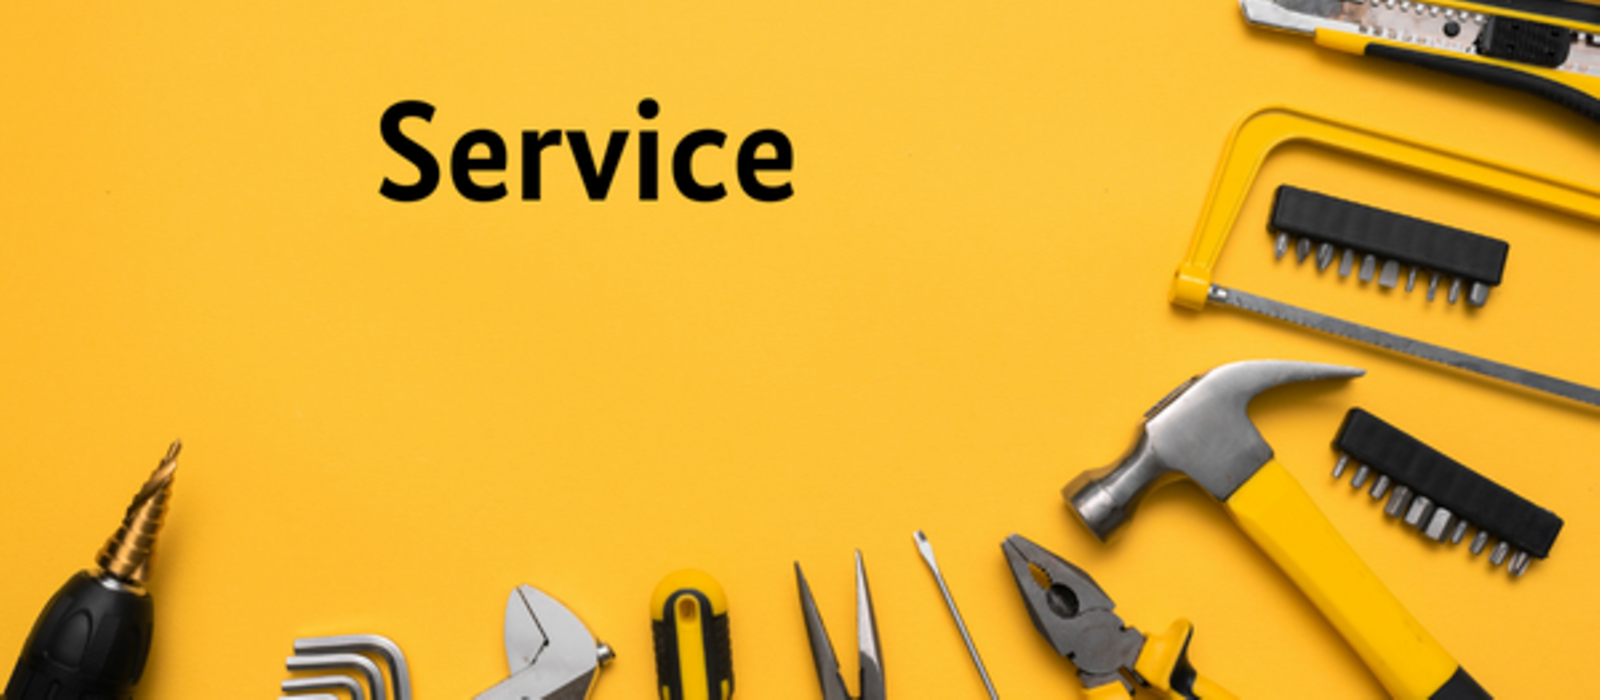 Bild zeigt: Schriftzug "Service" auf gelbem Hintergrund. Werkzeuge am unteren Bildrand.